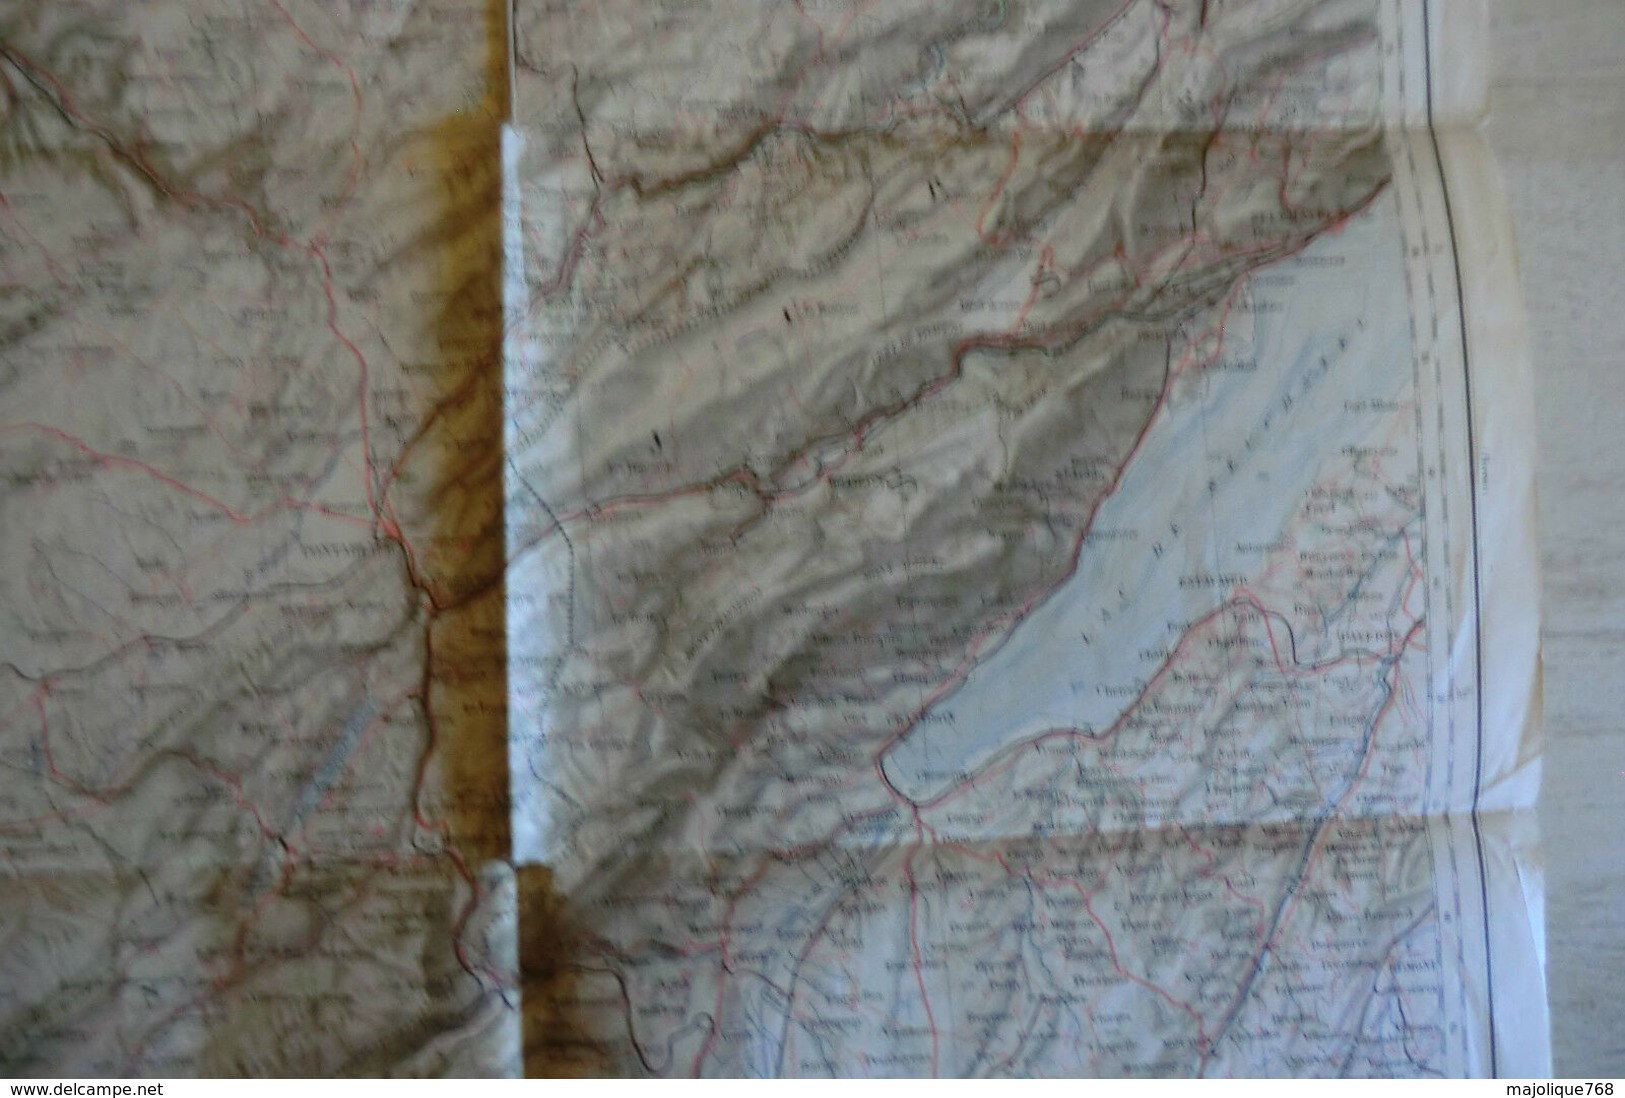 Carte Géographique Du Département Doubs - Besançon Et Les Alentours - Fin XIX°siècle - Landkarten